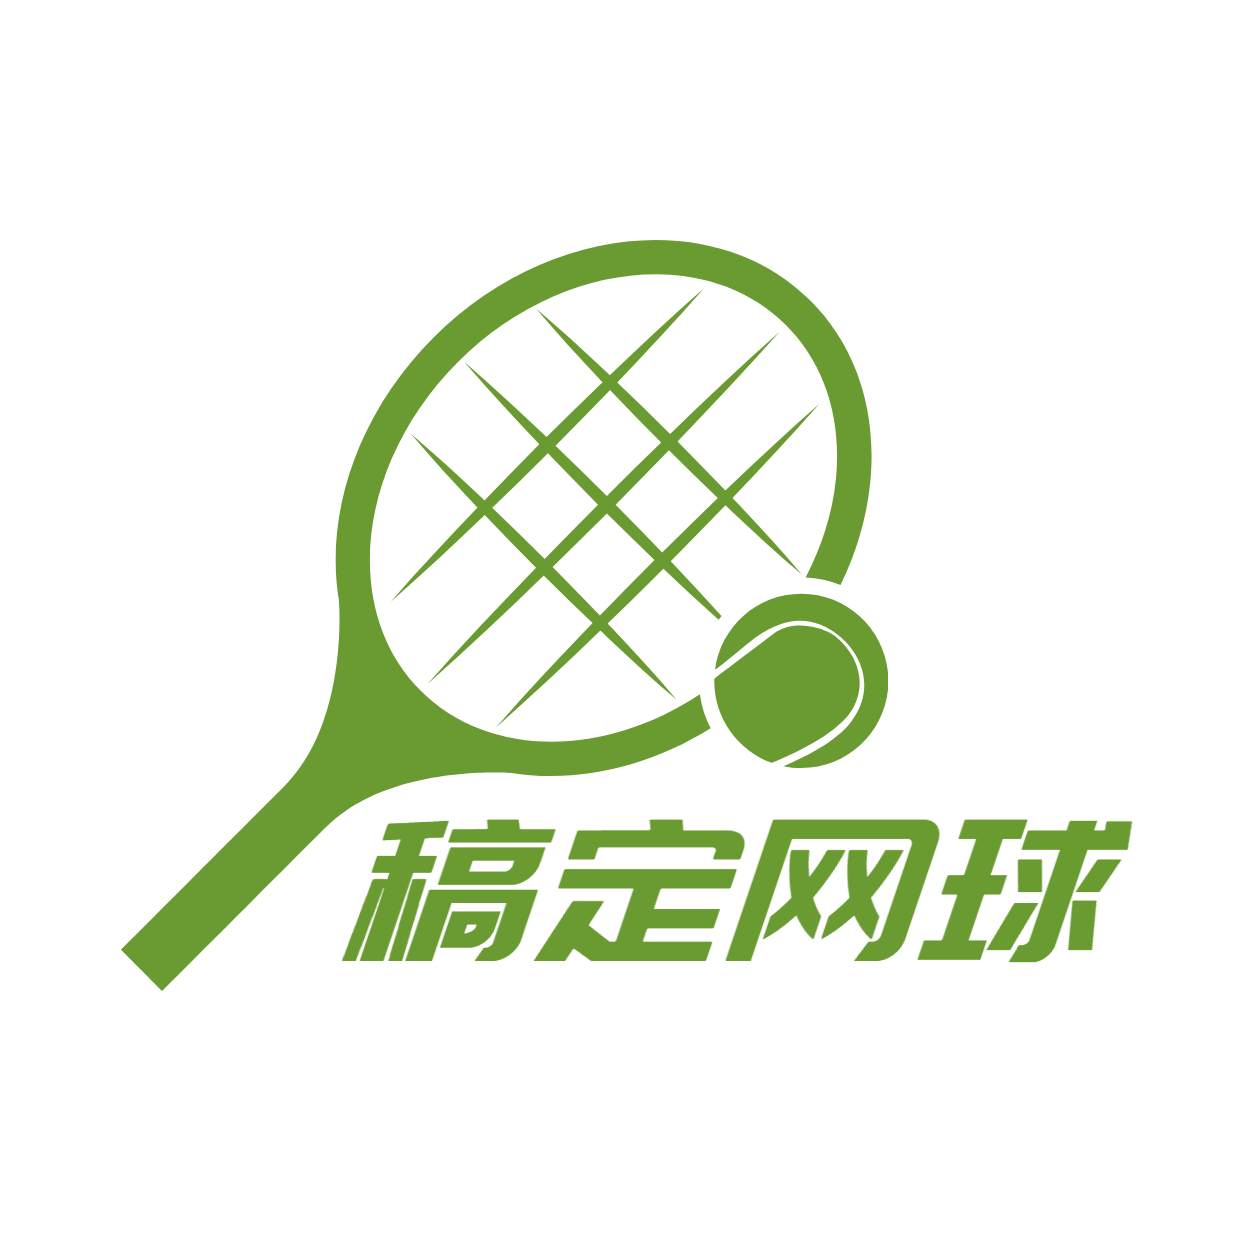 教育培训机构网球店标logo预览效果